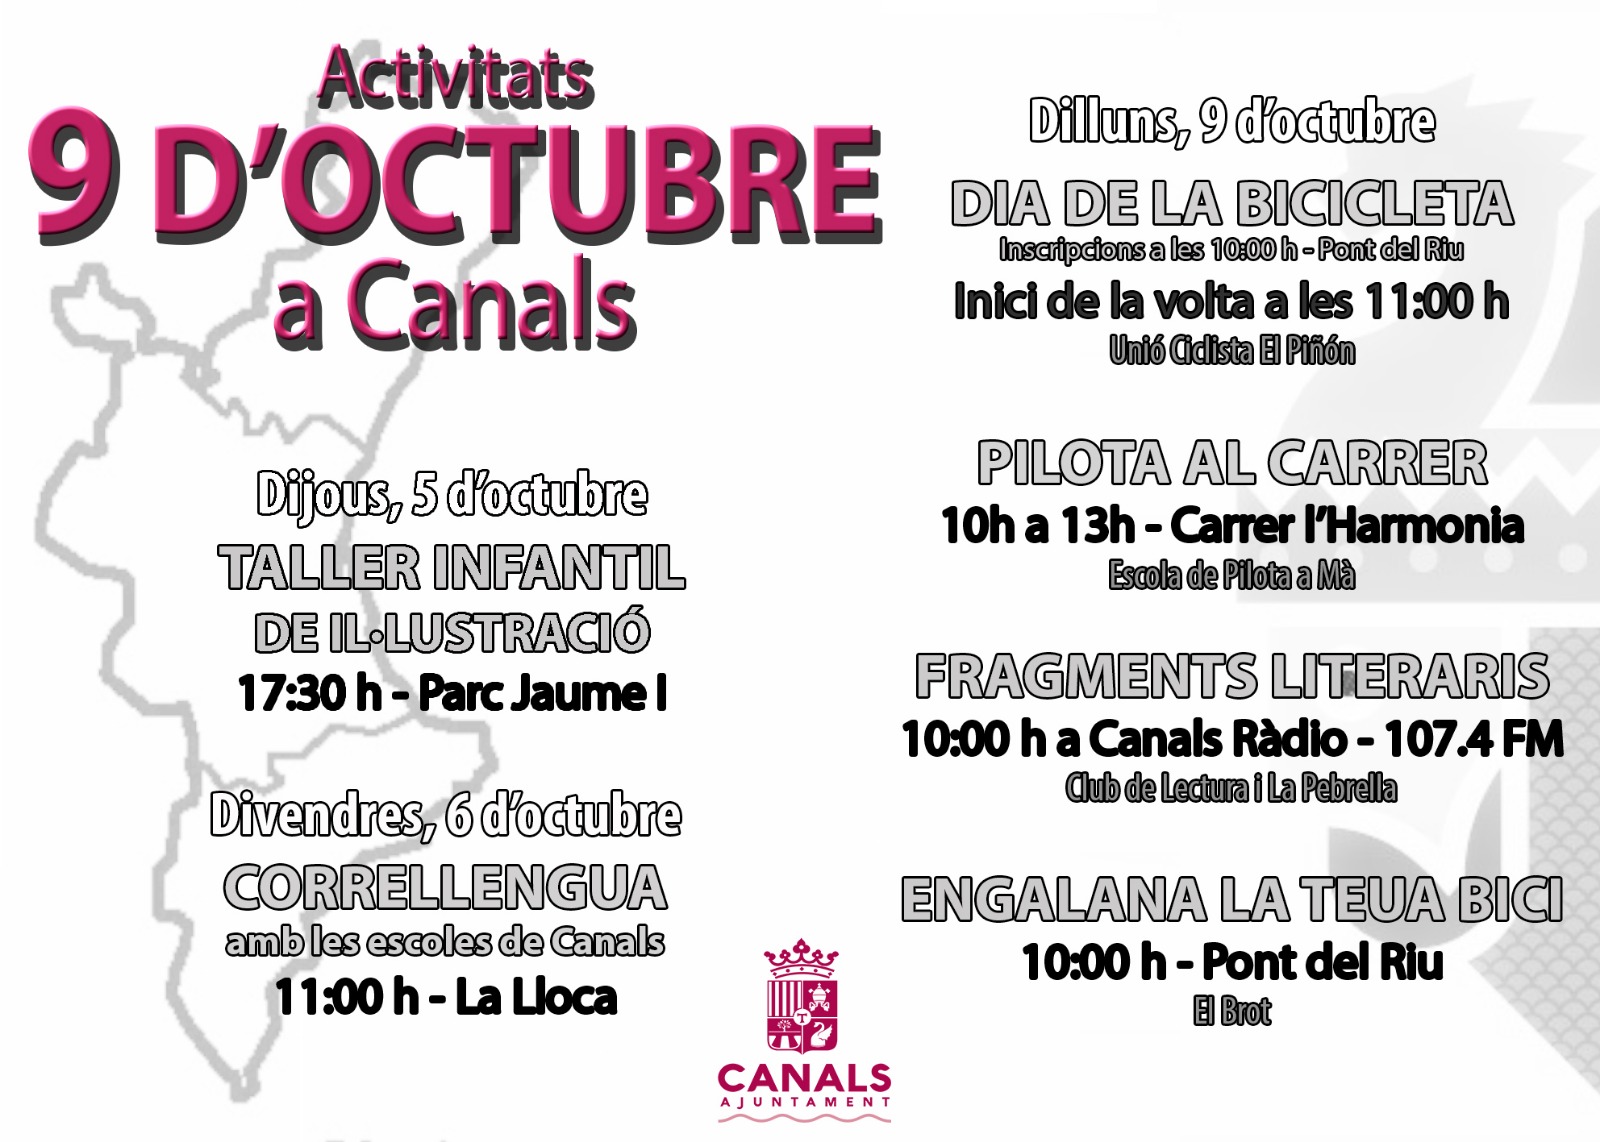 Canals organitza nombroses activitats per a commemorar el 9 d’octubre